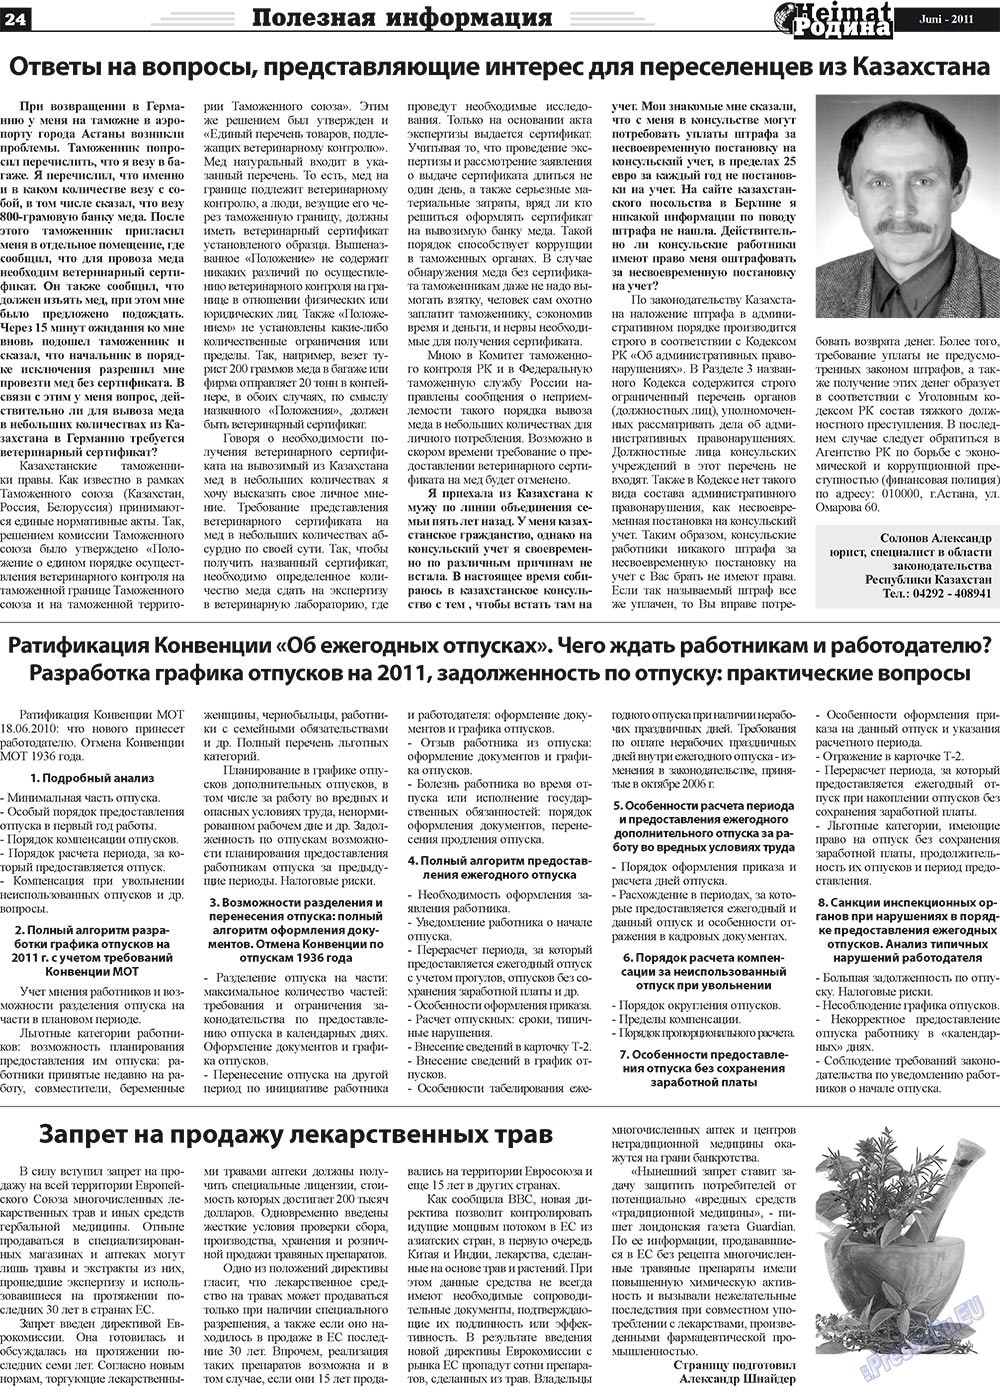 Heimat-Родина (газета). 2011 год, номер 6, стр. 24